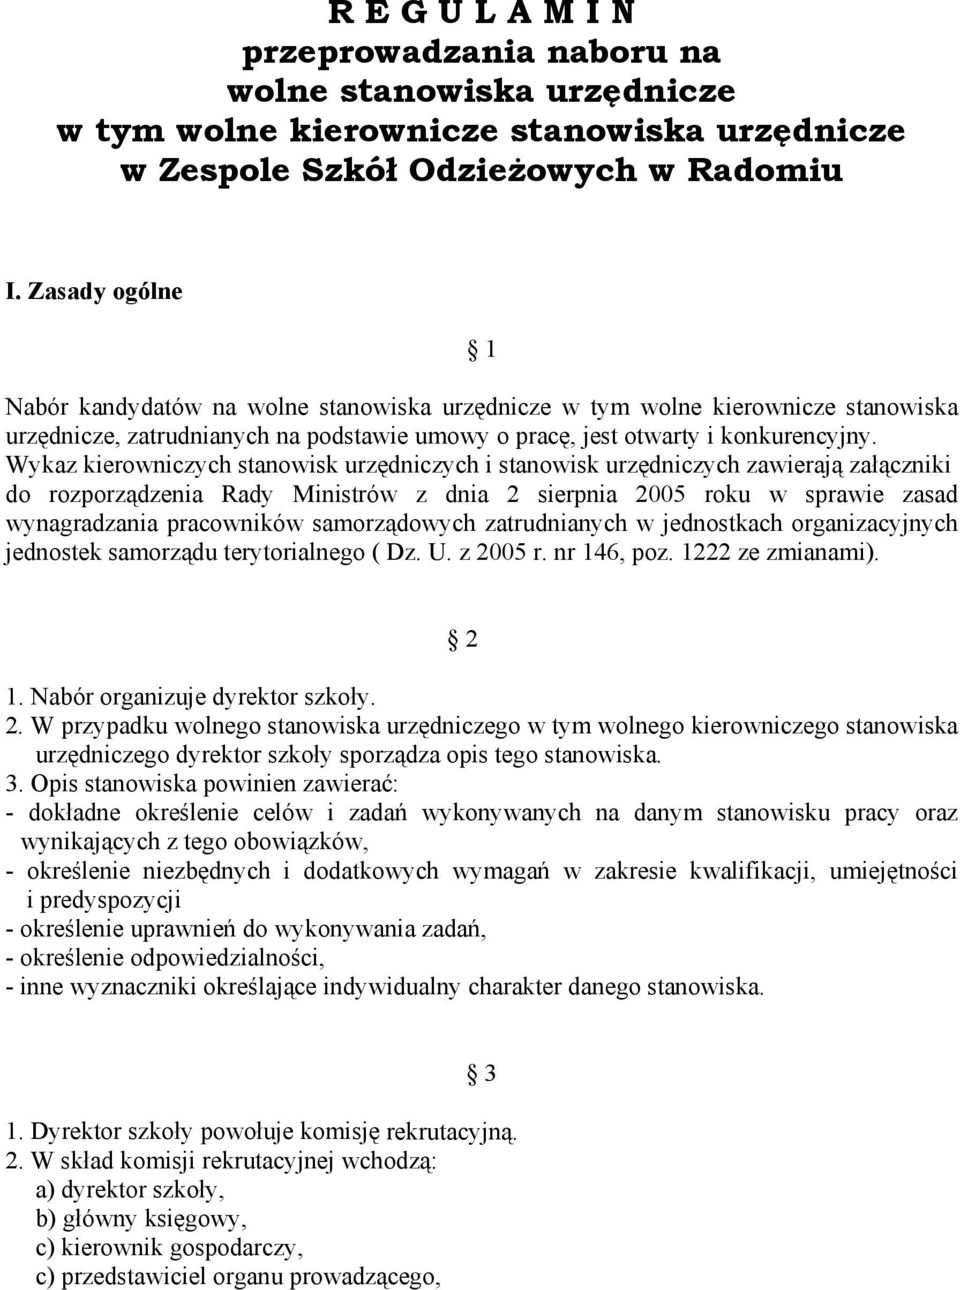 Wykaz kierowniczych stanowisk urzędniczych i stanowisk urzędniczych zawierają załączniki do rozporządzenia Rady Ministrów z dnia 2 sierpnia 2005 roku w sprawie zasad wynagradzania pracowników